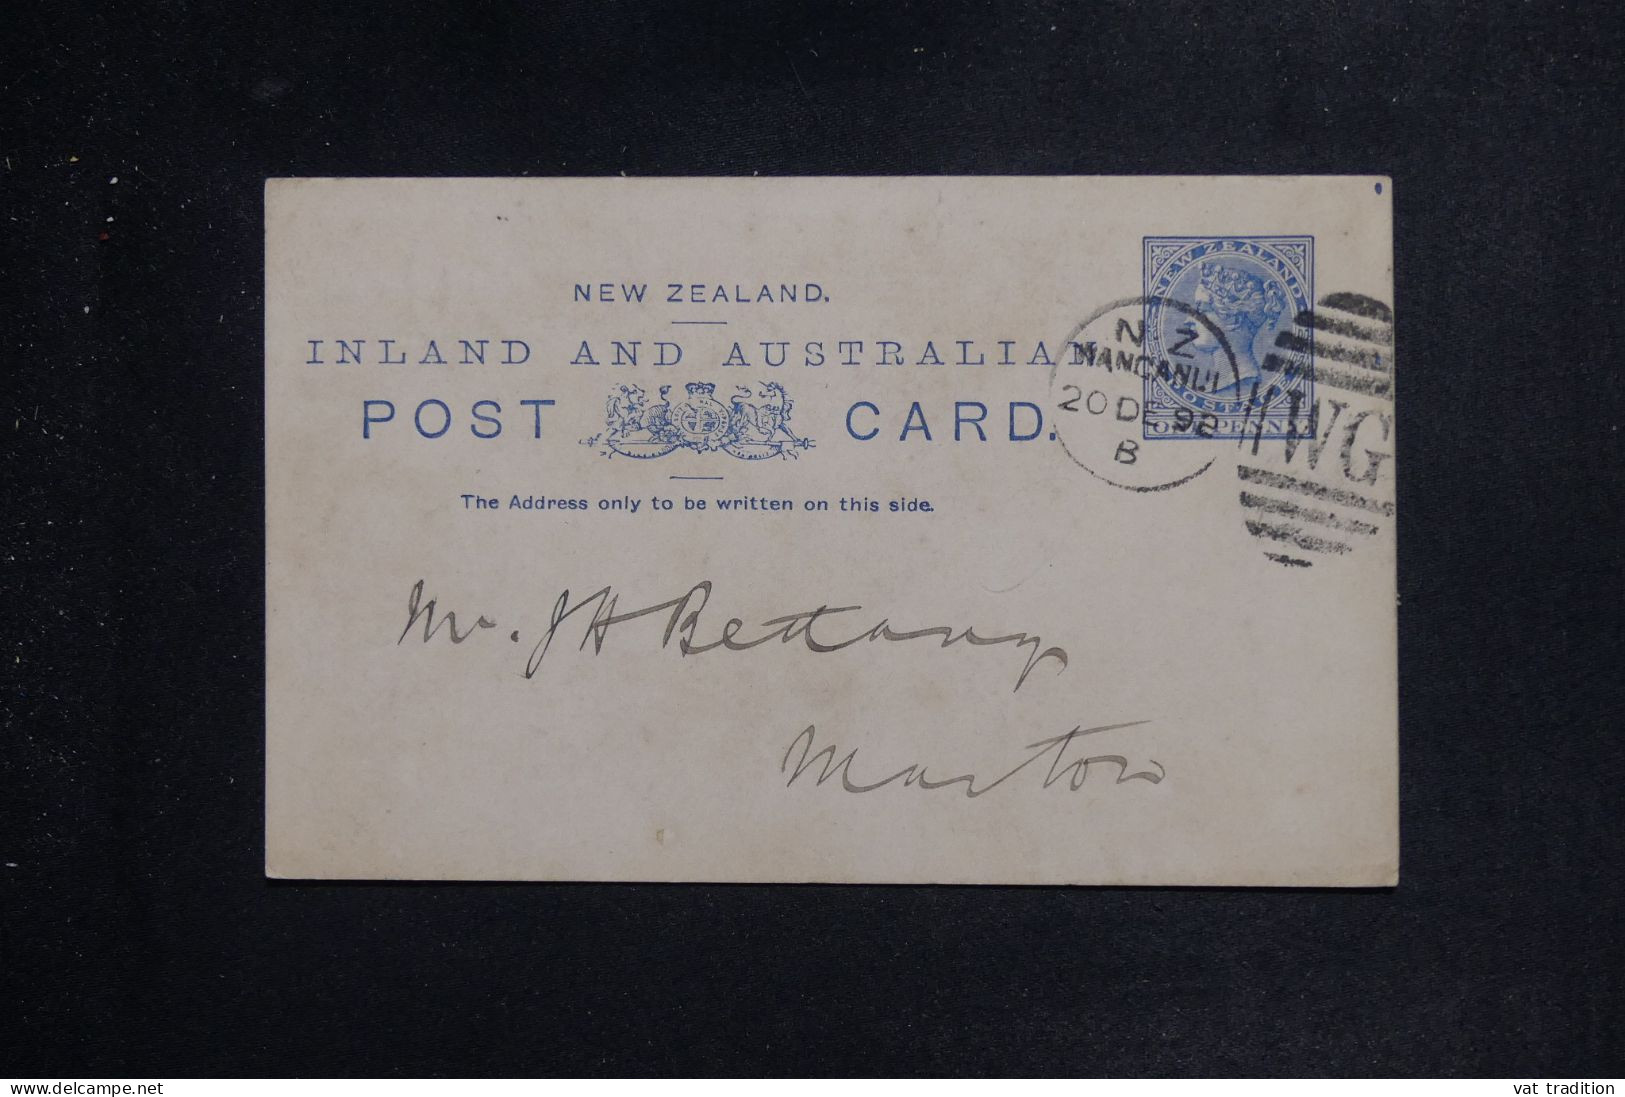 NOUVELLE ZÉLANDE - Entier Postal Type Victoria De Wanganui Pour Marton En 1892 - L 151264 - Lettres & Documents